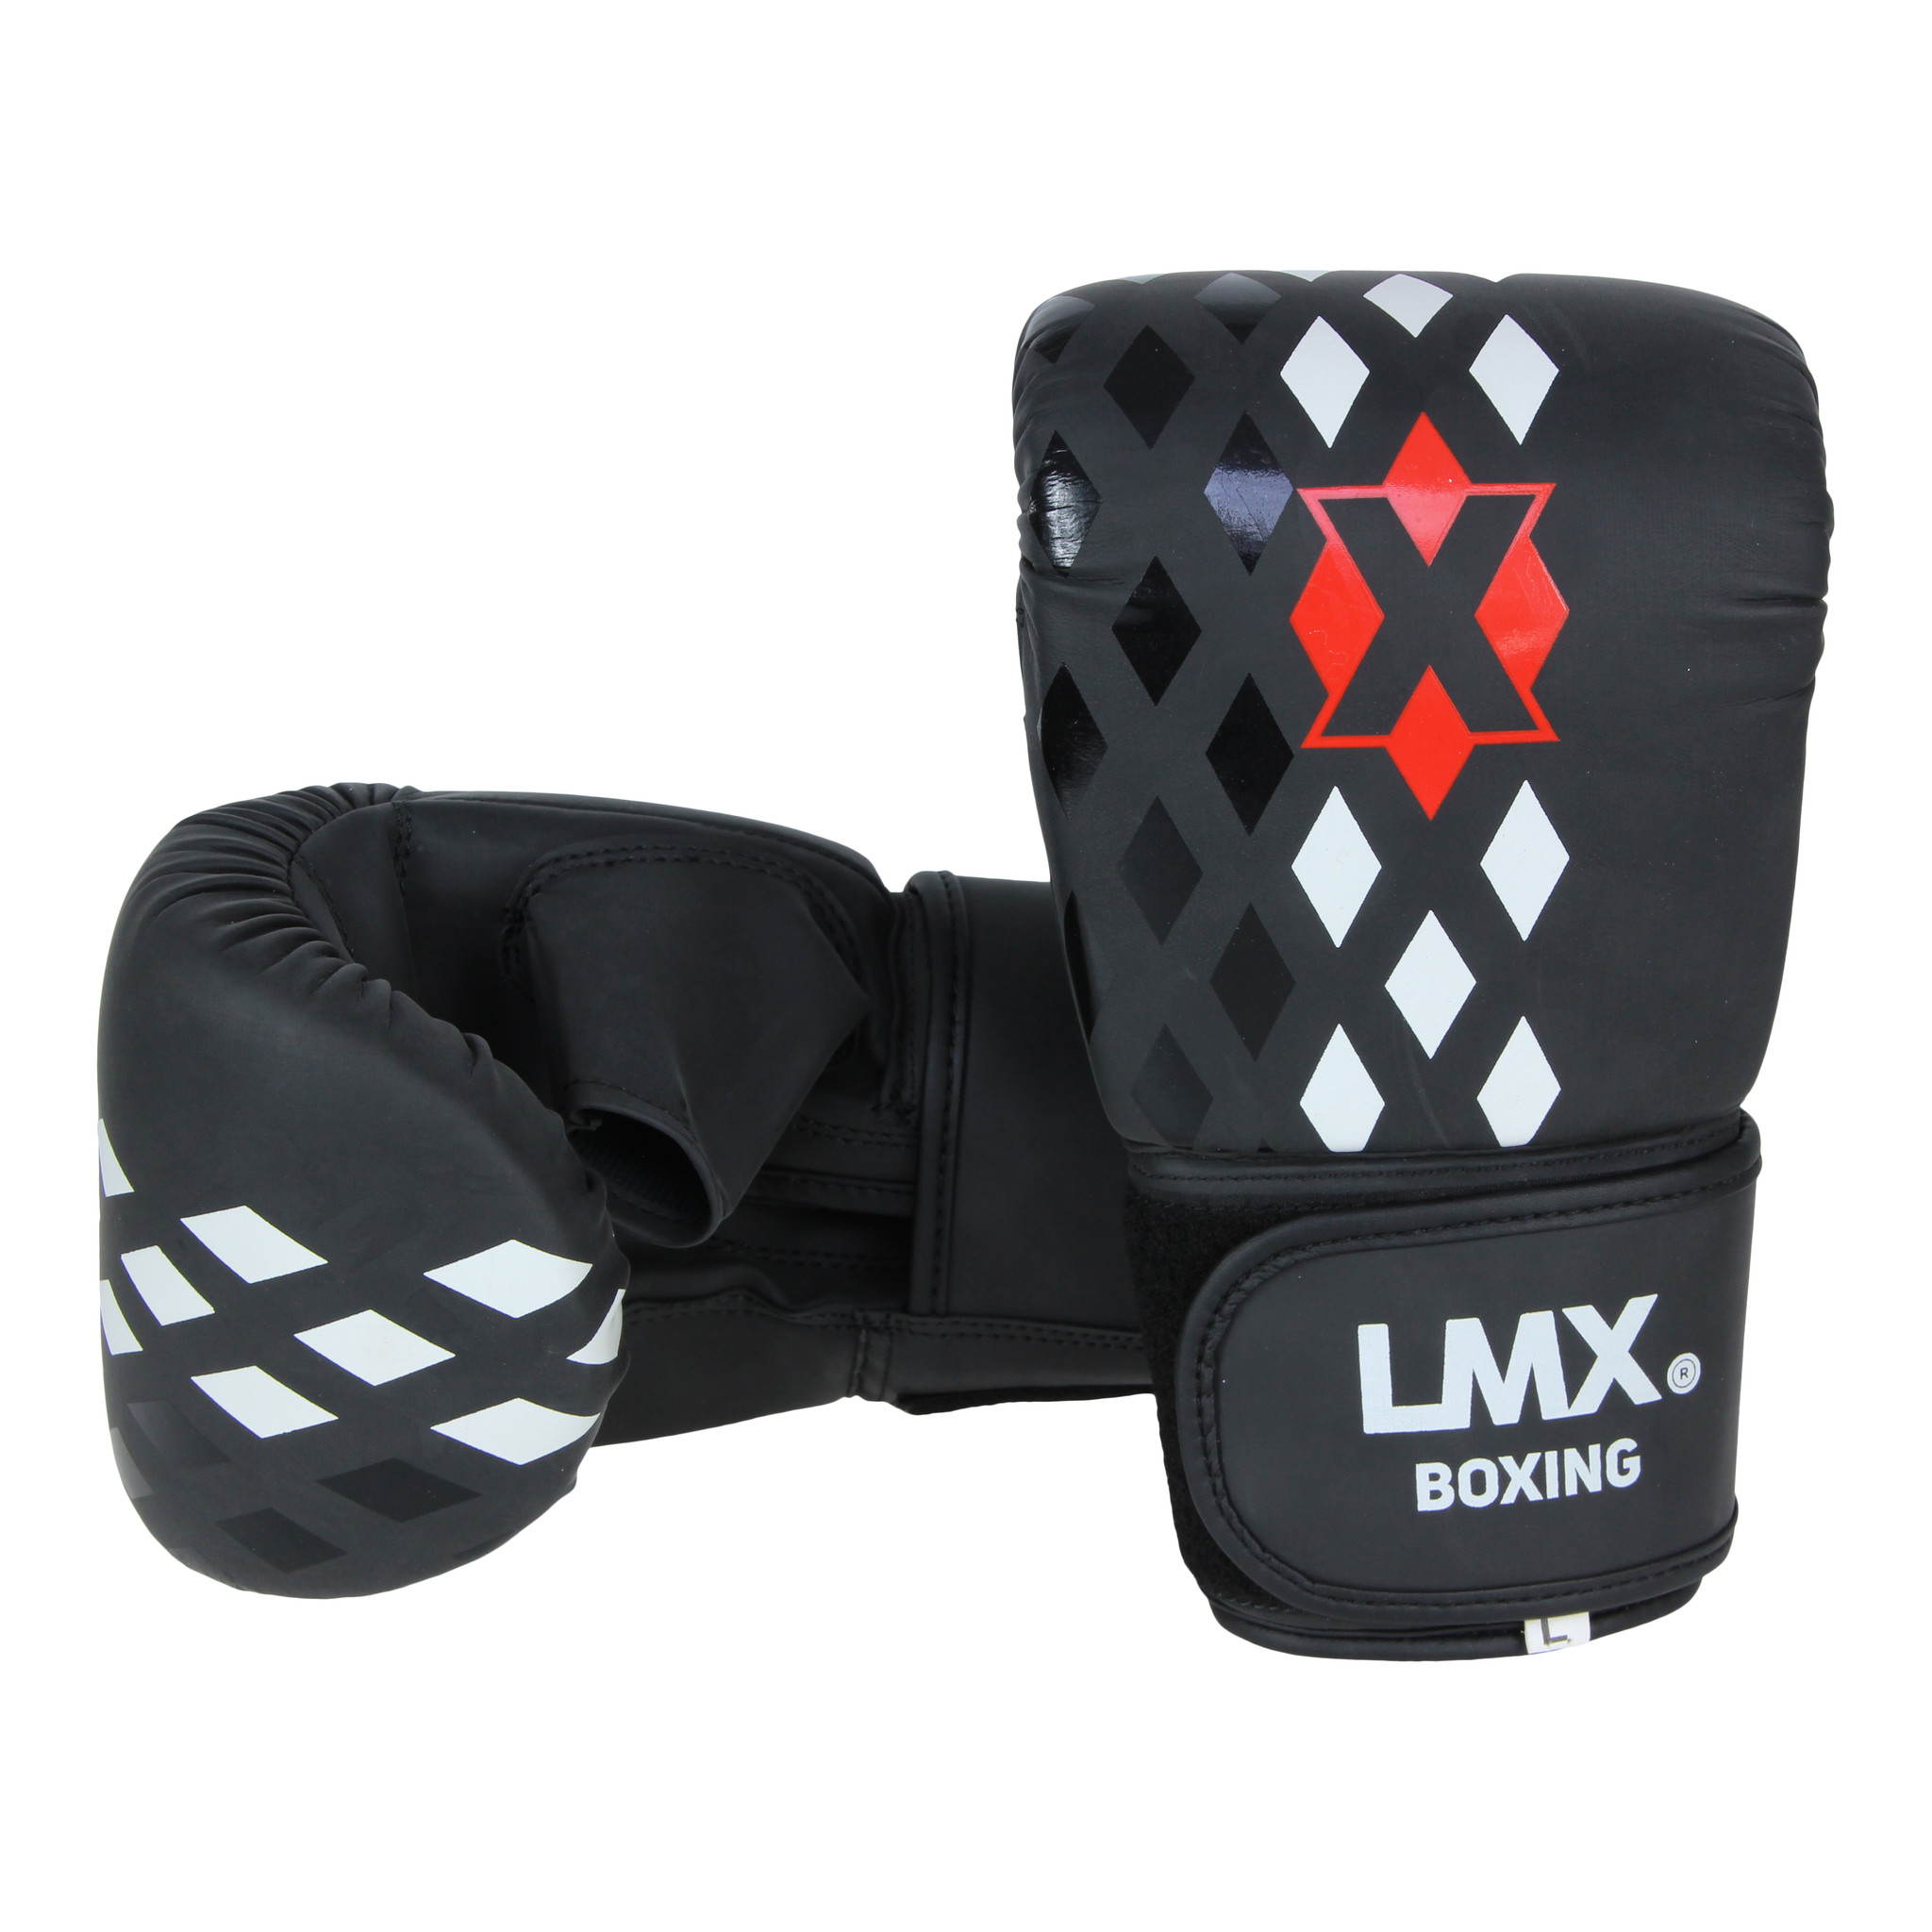 Bytomic Boxing Bag Gloves Red Label blackblack SM  SM  16400321